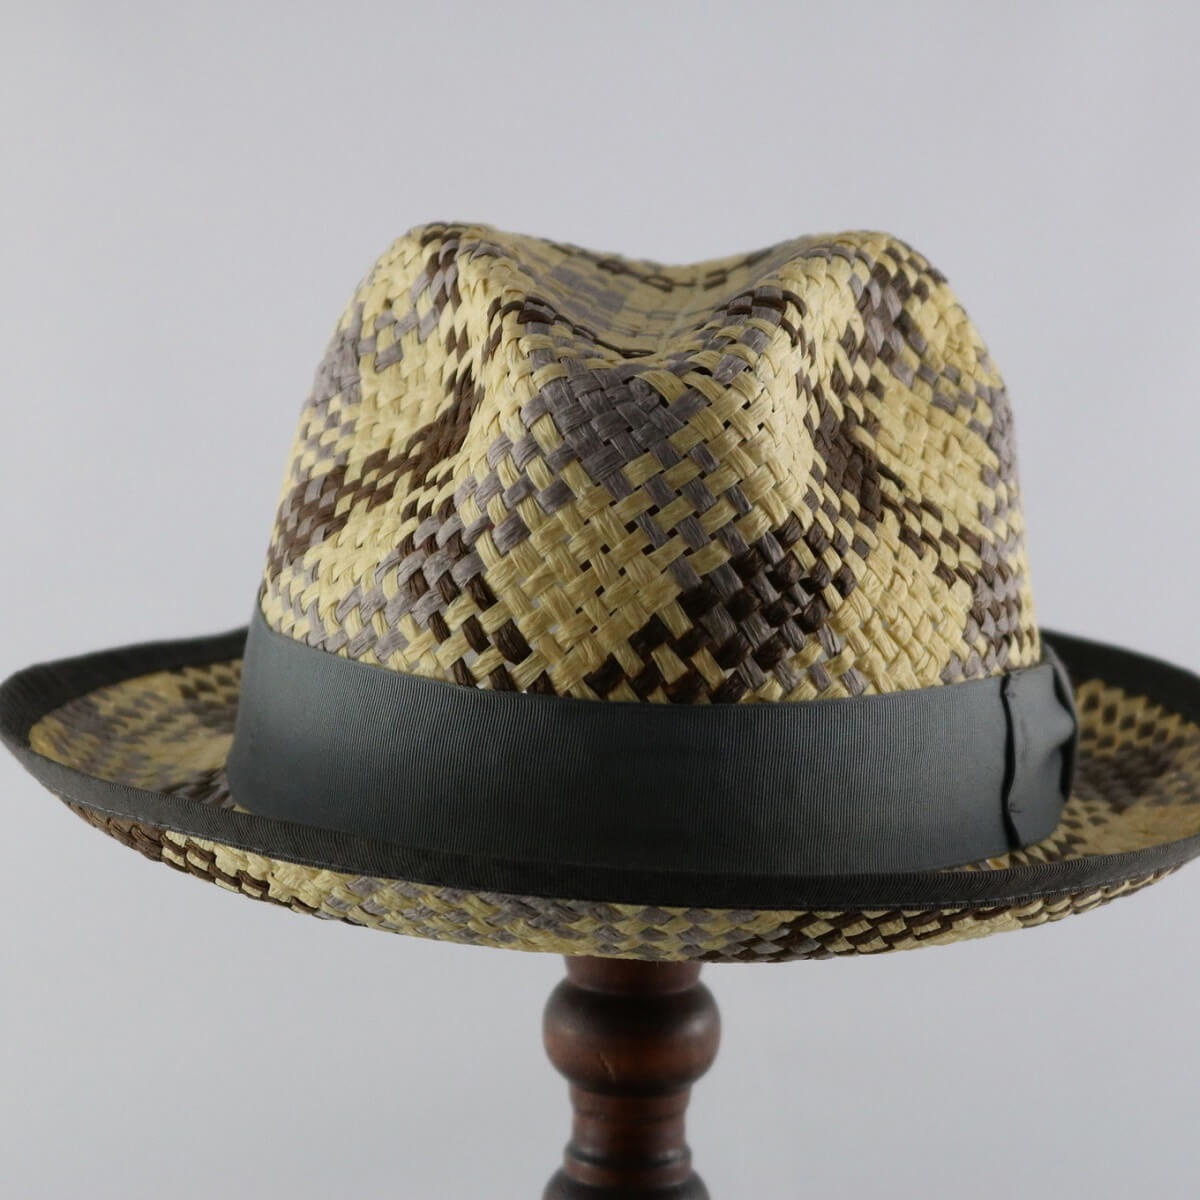 Men's Hats - Granville Island Hat Shop